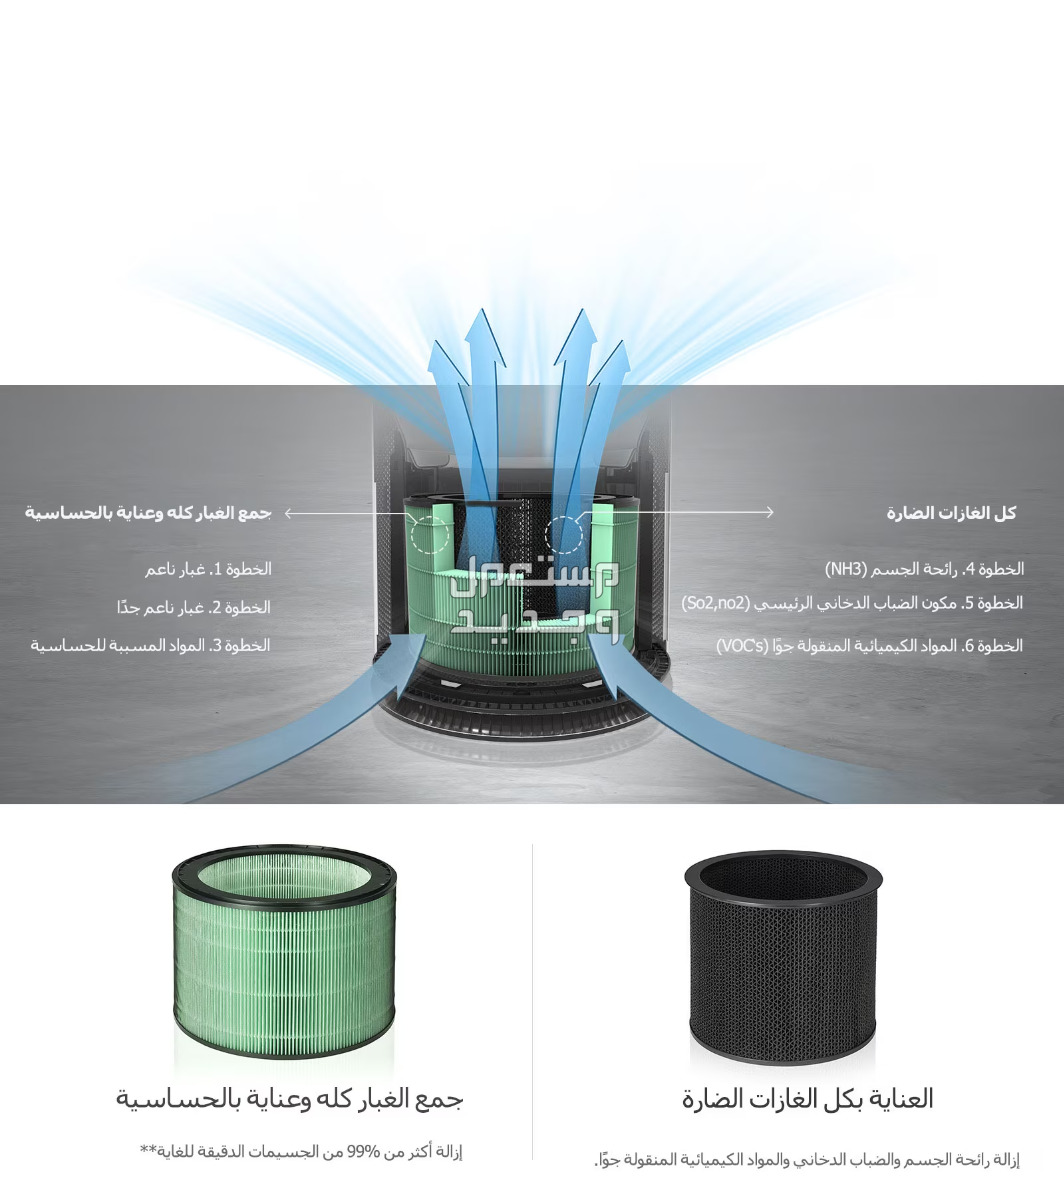 بالصور .. منقي هواء ال جي ..فوائد رائعة وهذا سعره في عمان طريقة عمل فلاتر التنقية